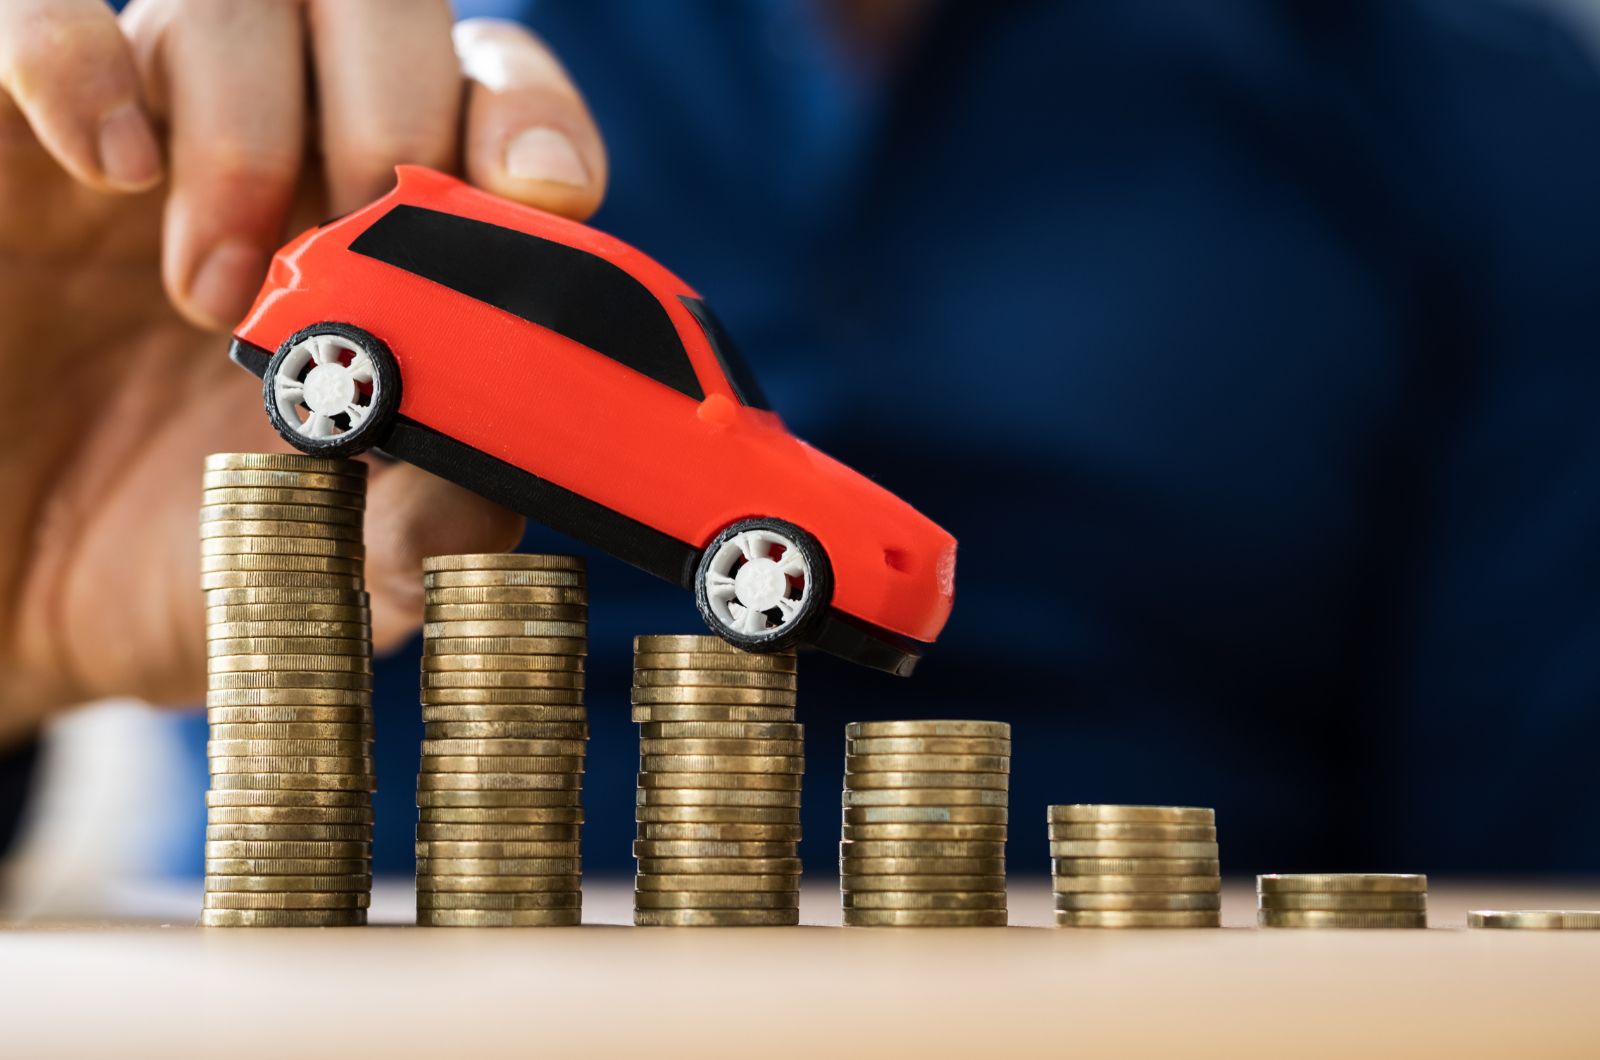 מדוע מחיר של רכב מותג לינק אנד קו מוצדק?